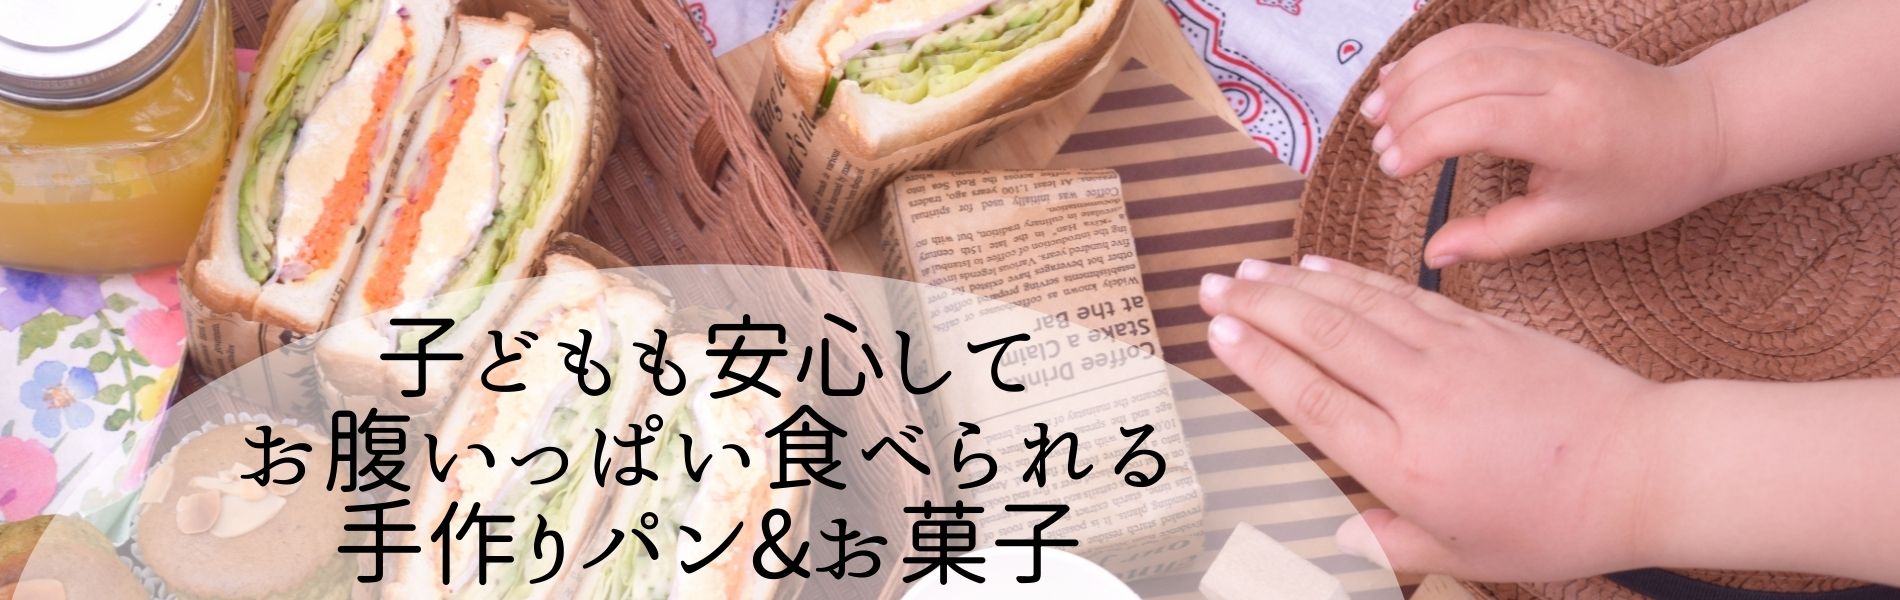 横須賀パン&お菓子教室ルミエル